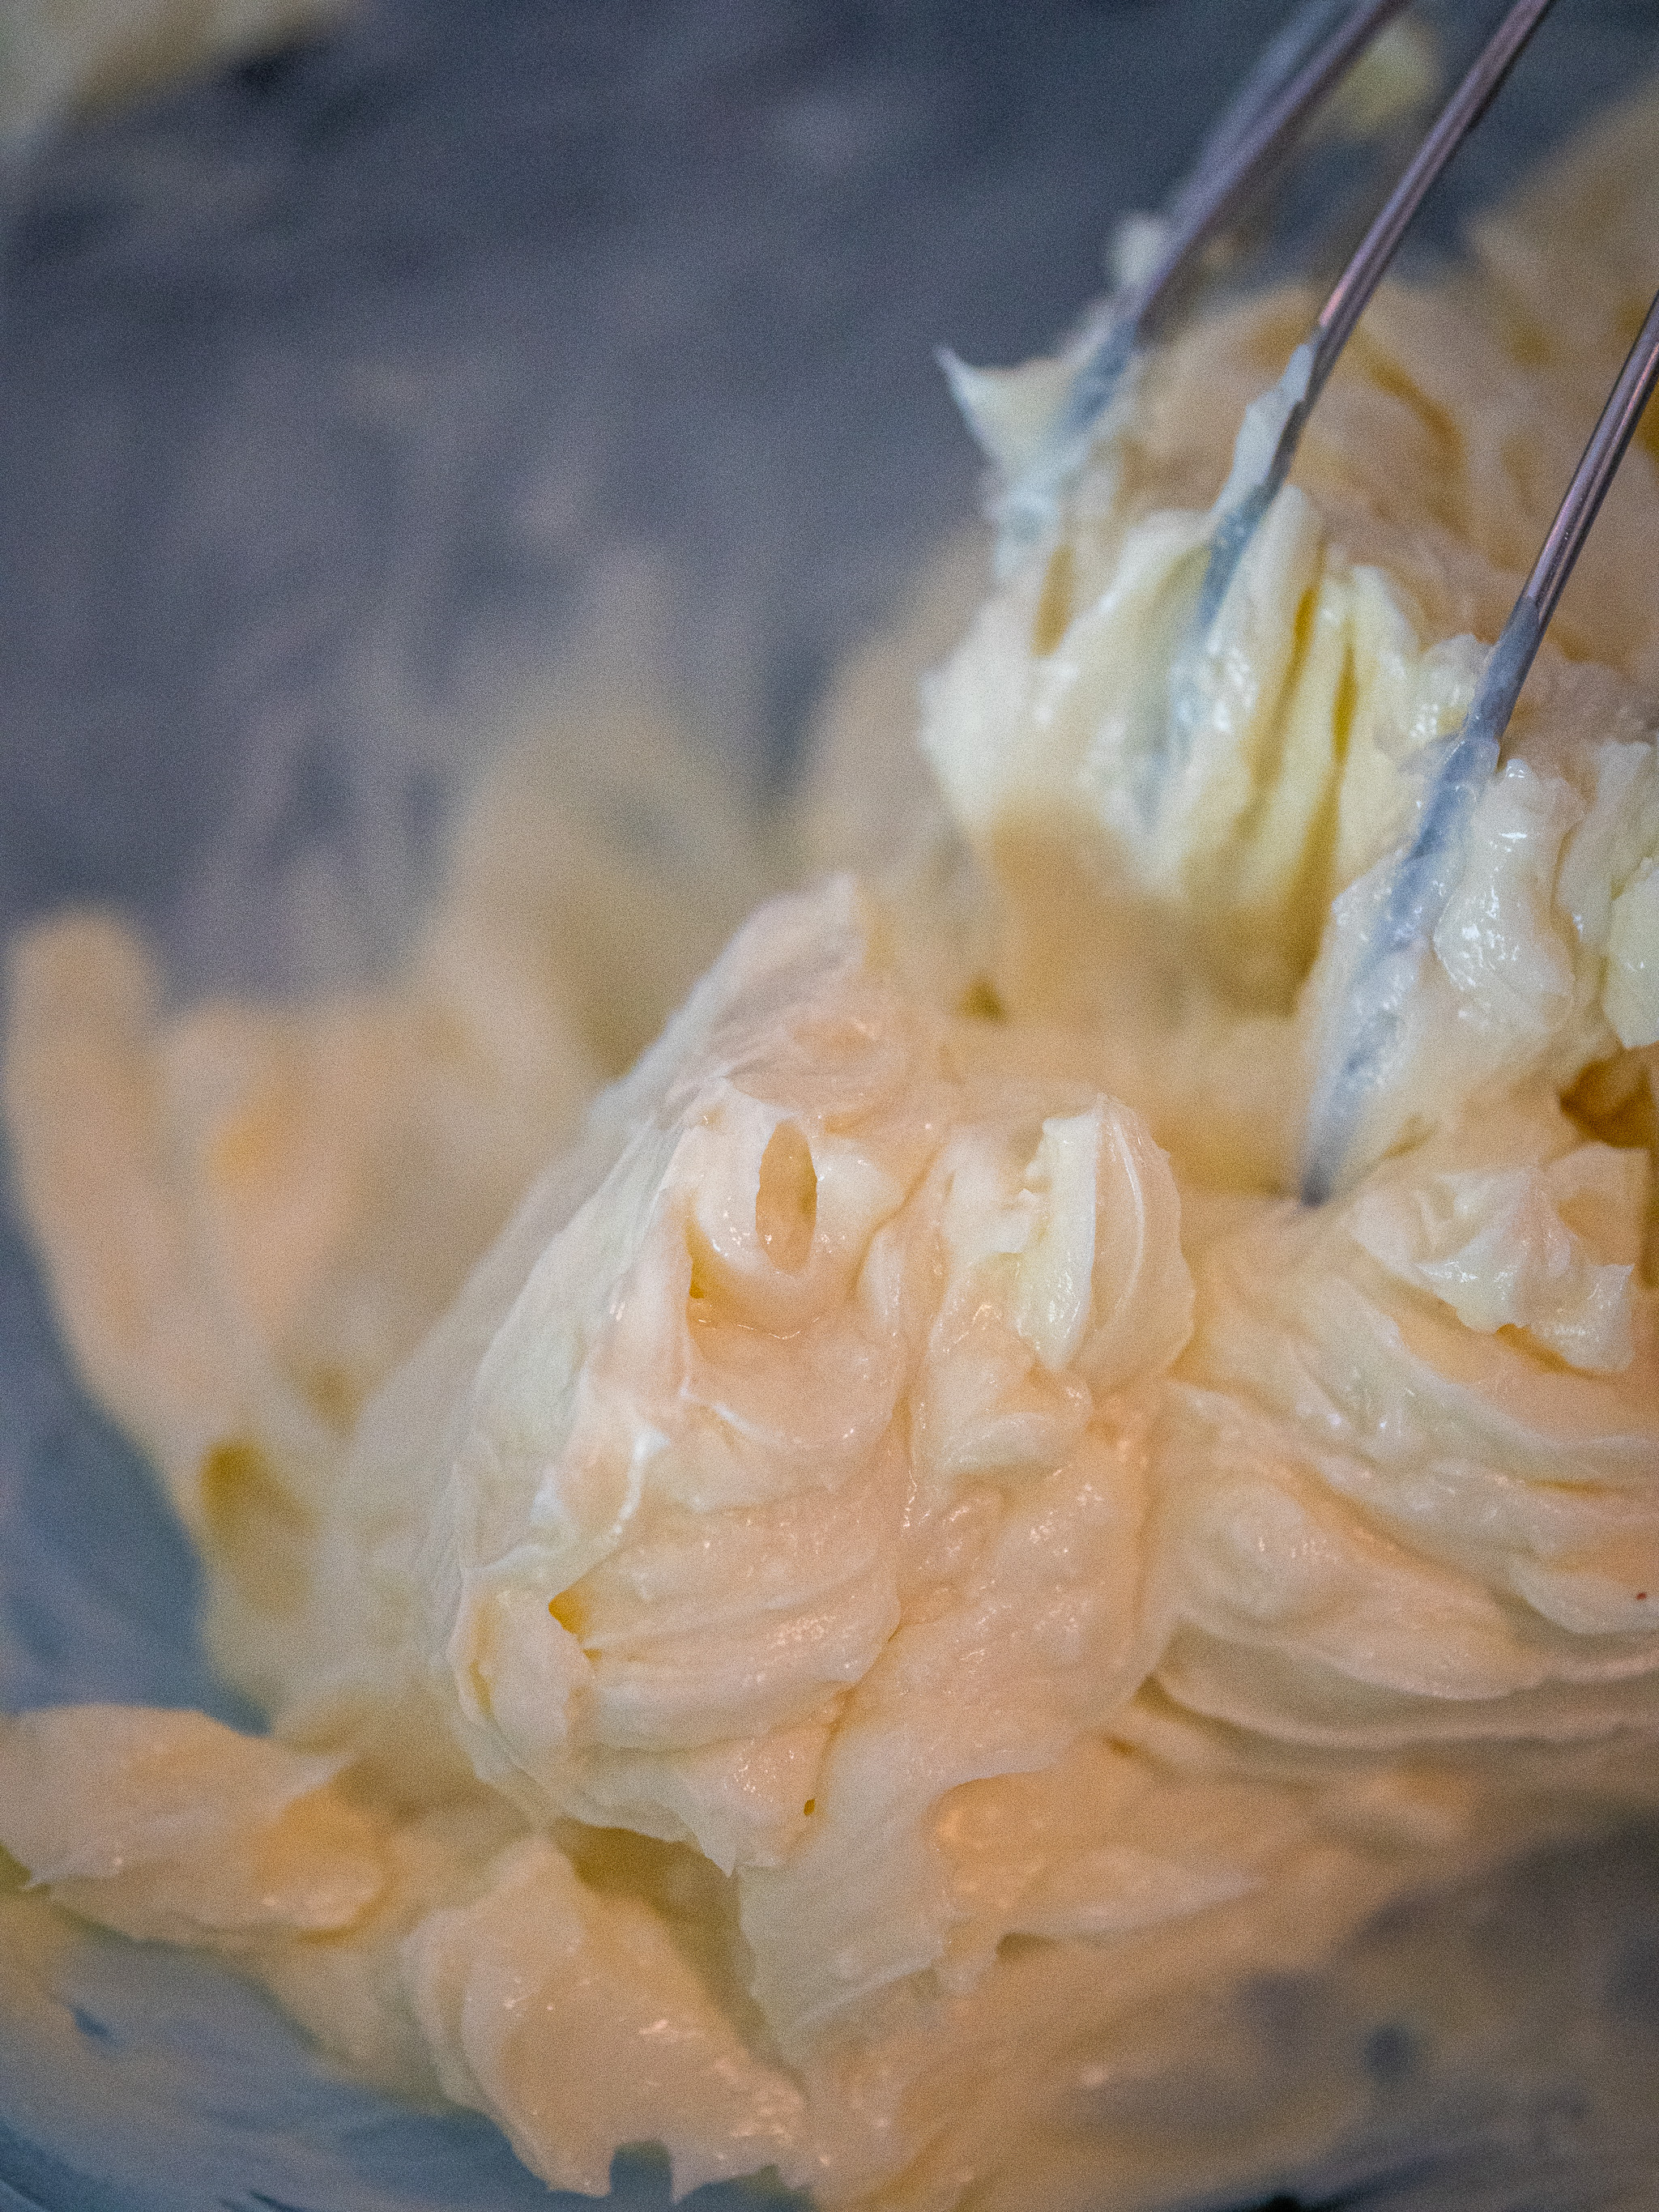 Donner une texture pommade à la margarine